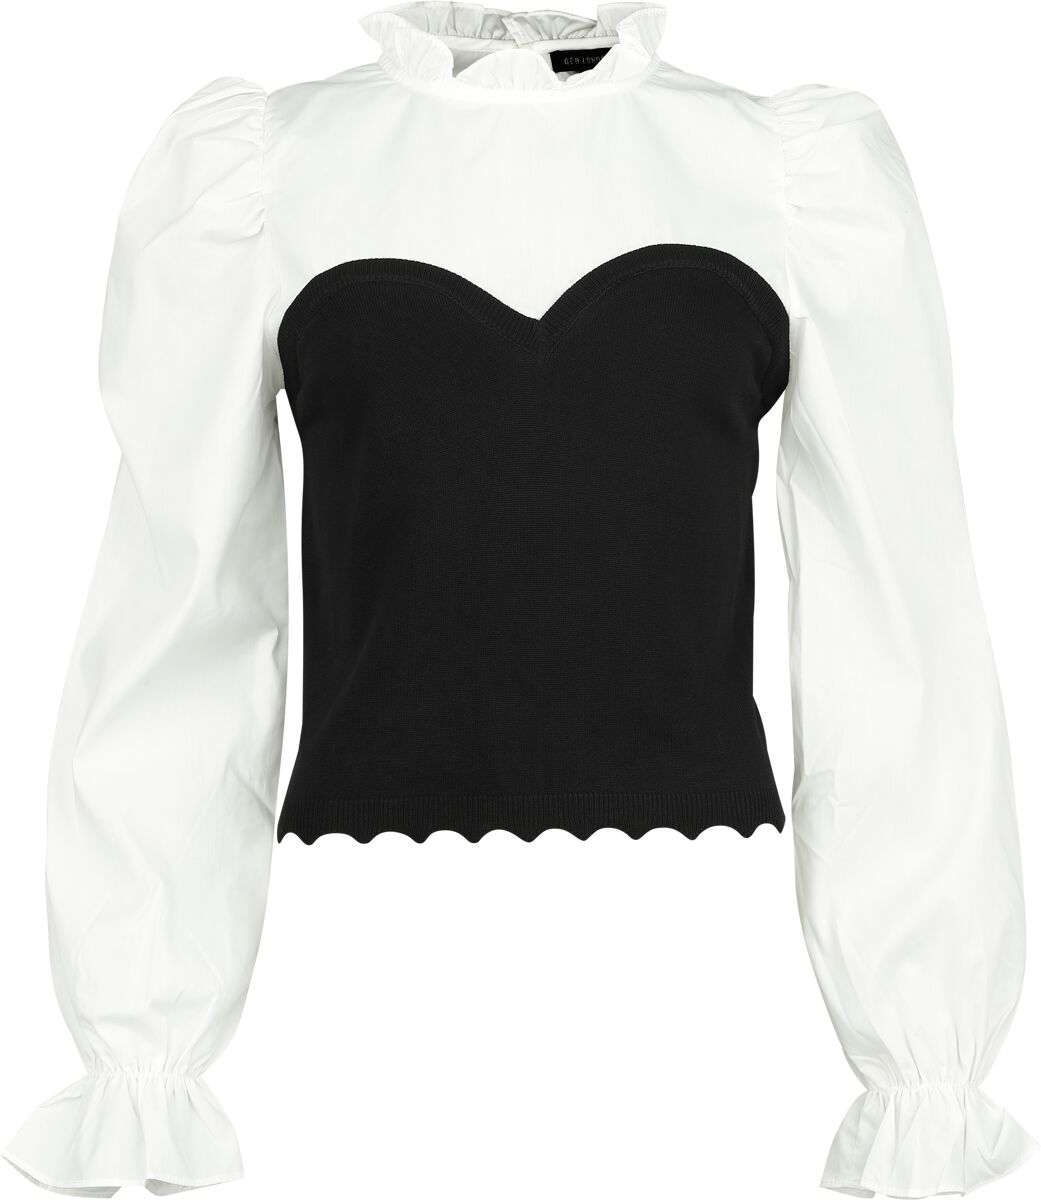 QED London - Rockabilly Bluse - Corset Detail Frill Collar Puff Sleeve Shirt - M bis L - für Damen - Größe M - schwarz/weiß